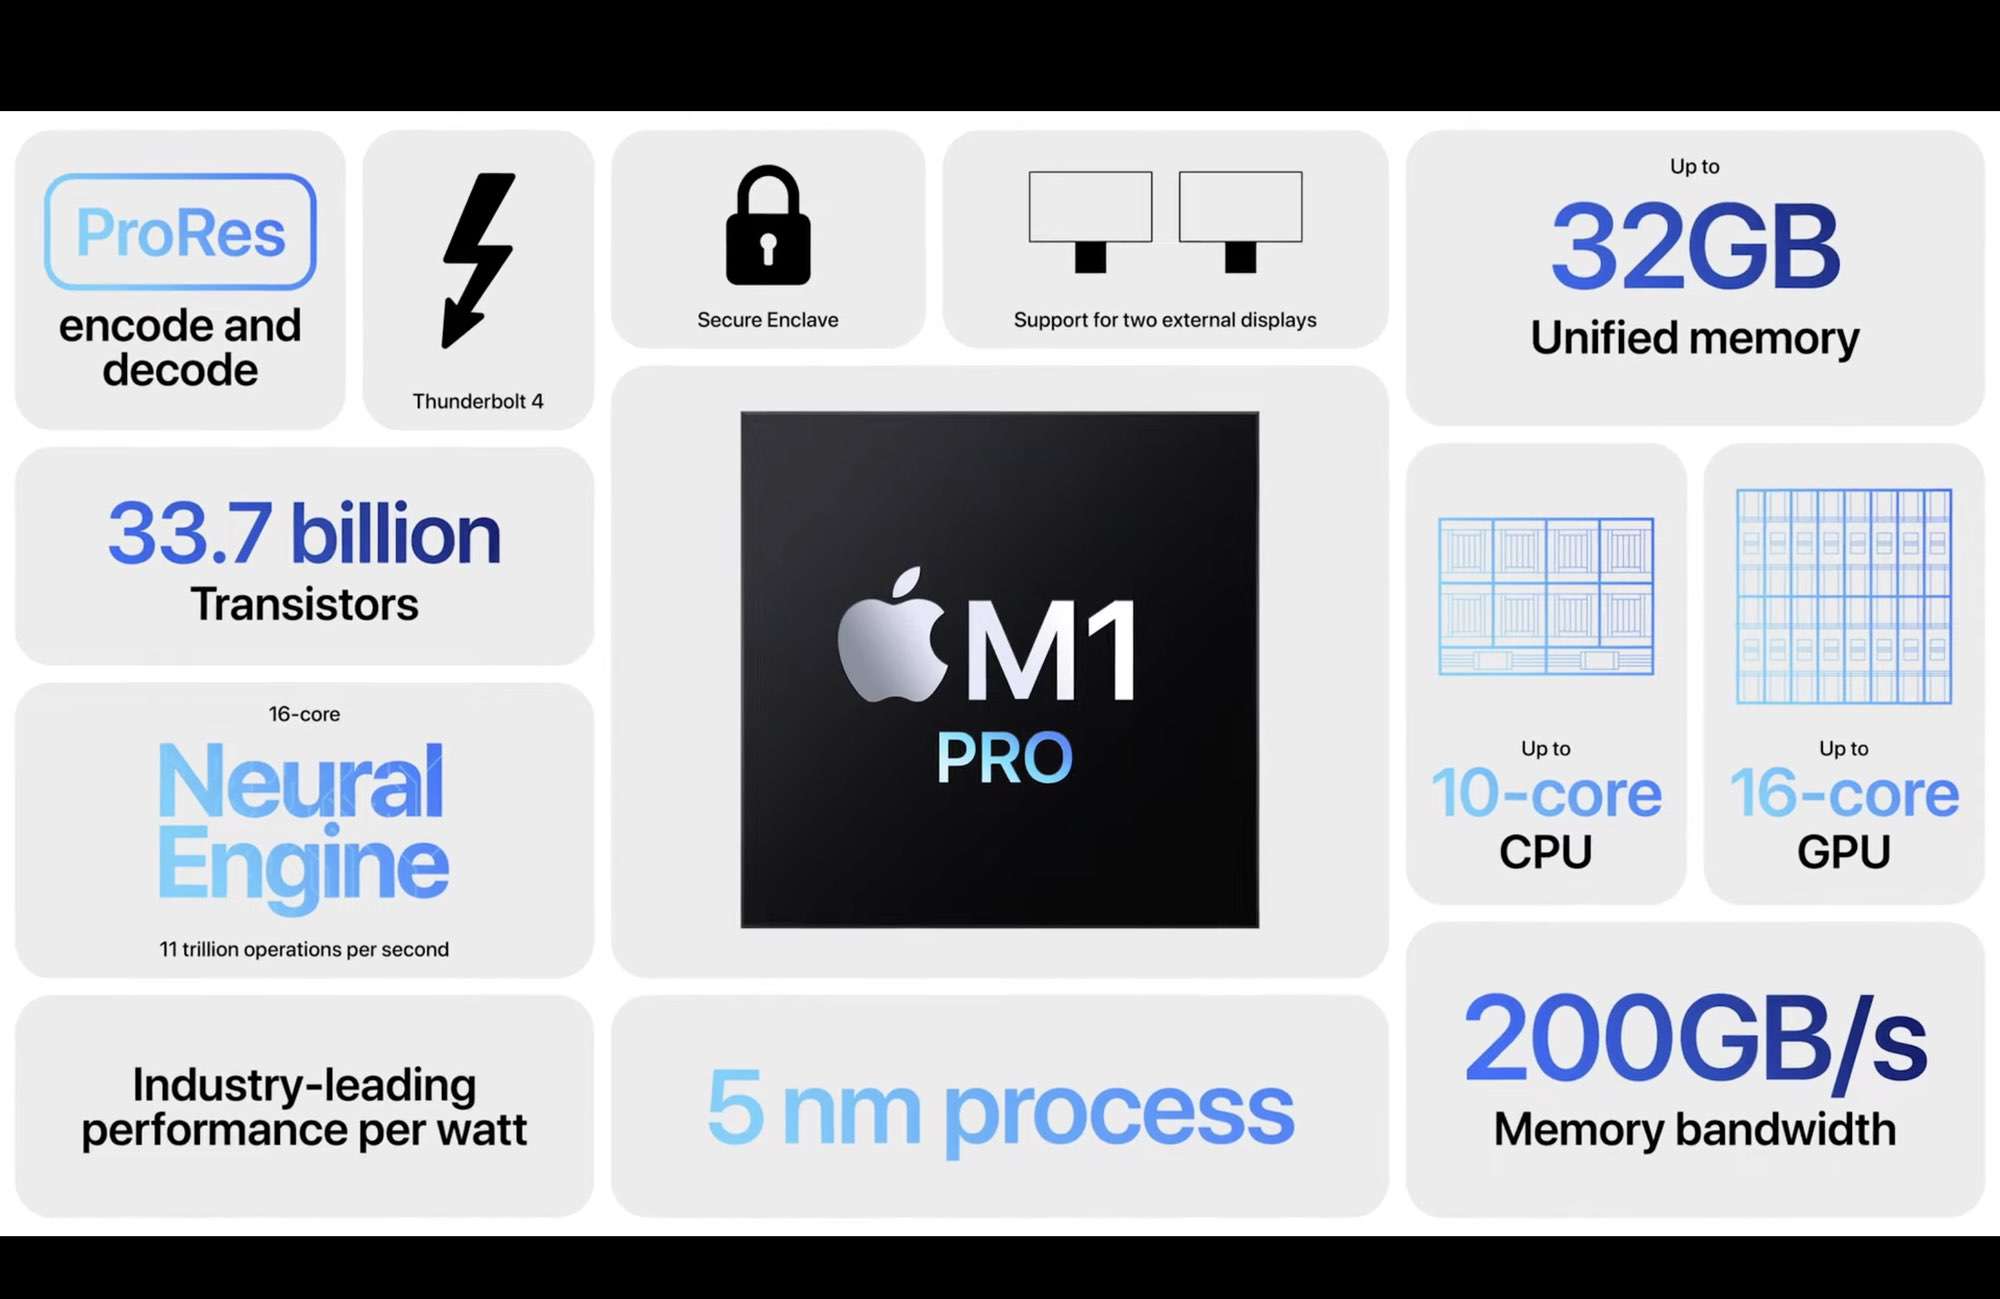 M1 Pro และ M1 Max แรงทะลุจักรวาล และการออกแบบทางวิศวกรรมอันยอดเยี่ยมจาก Apple